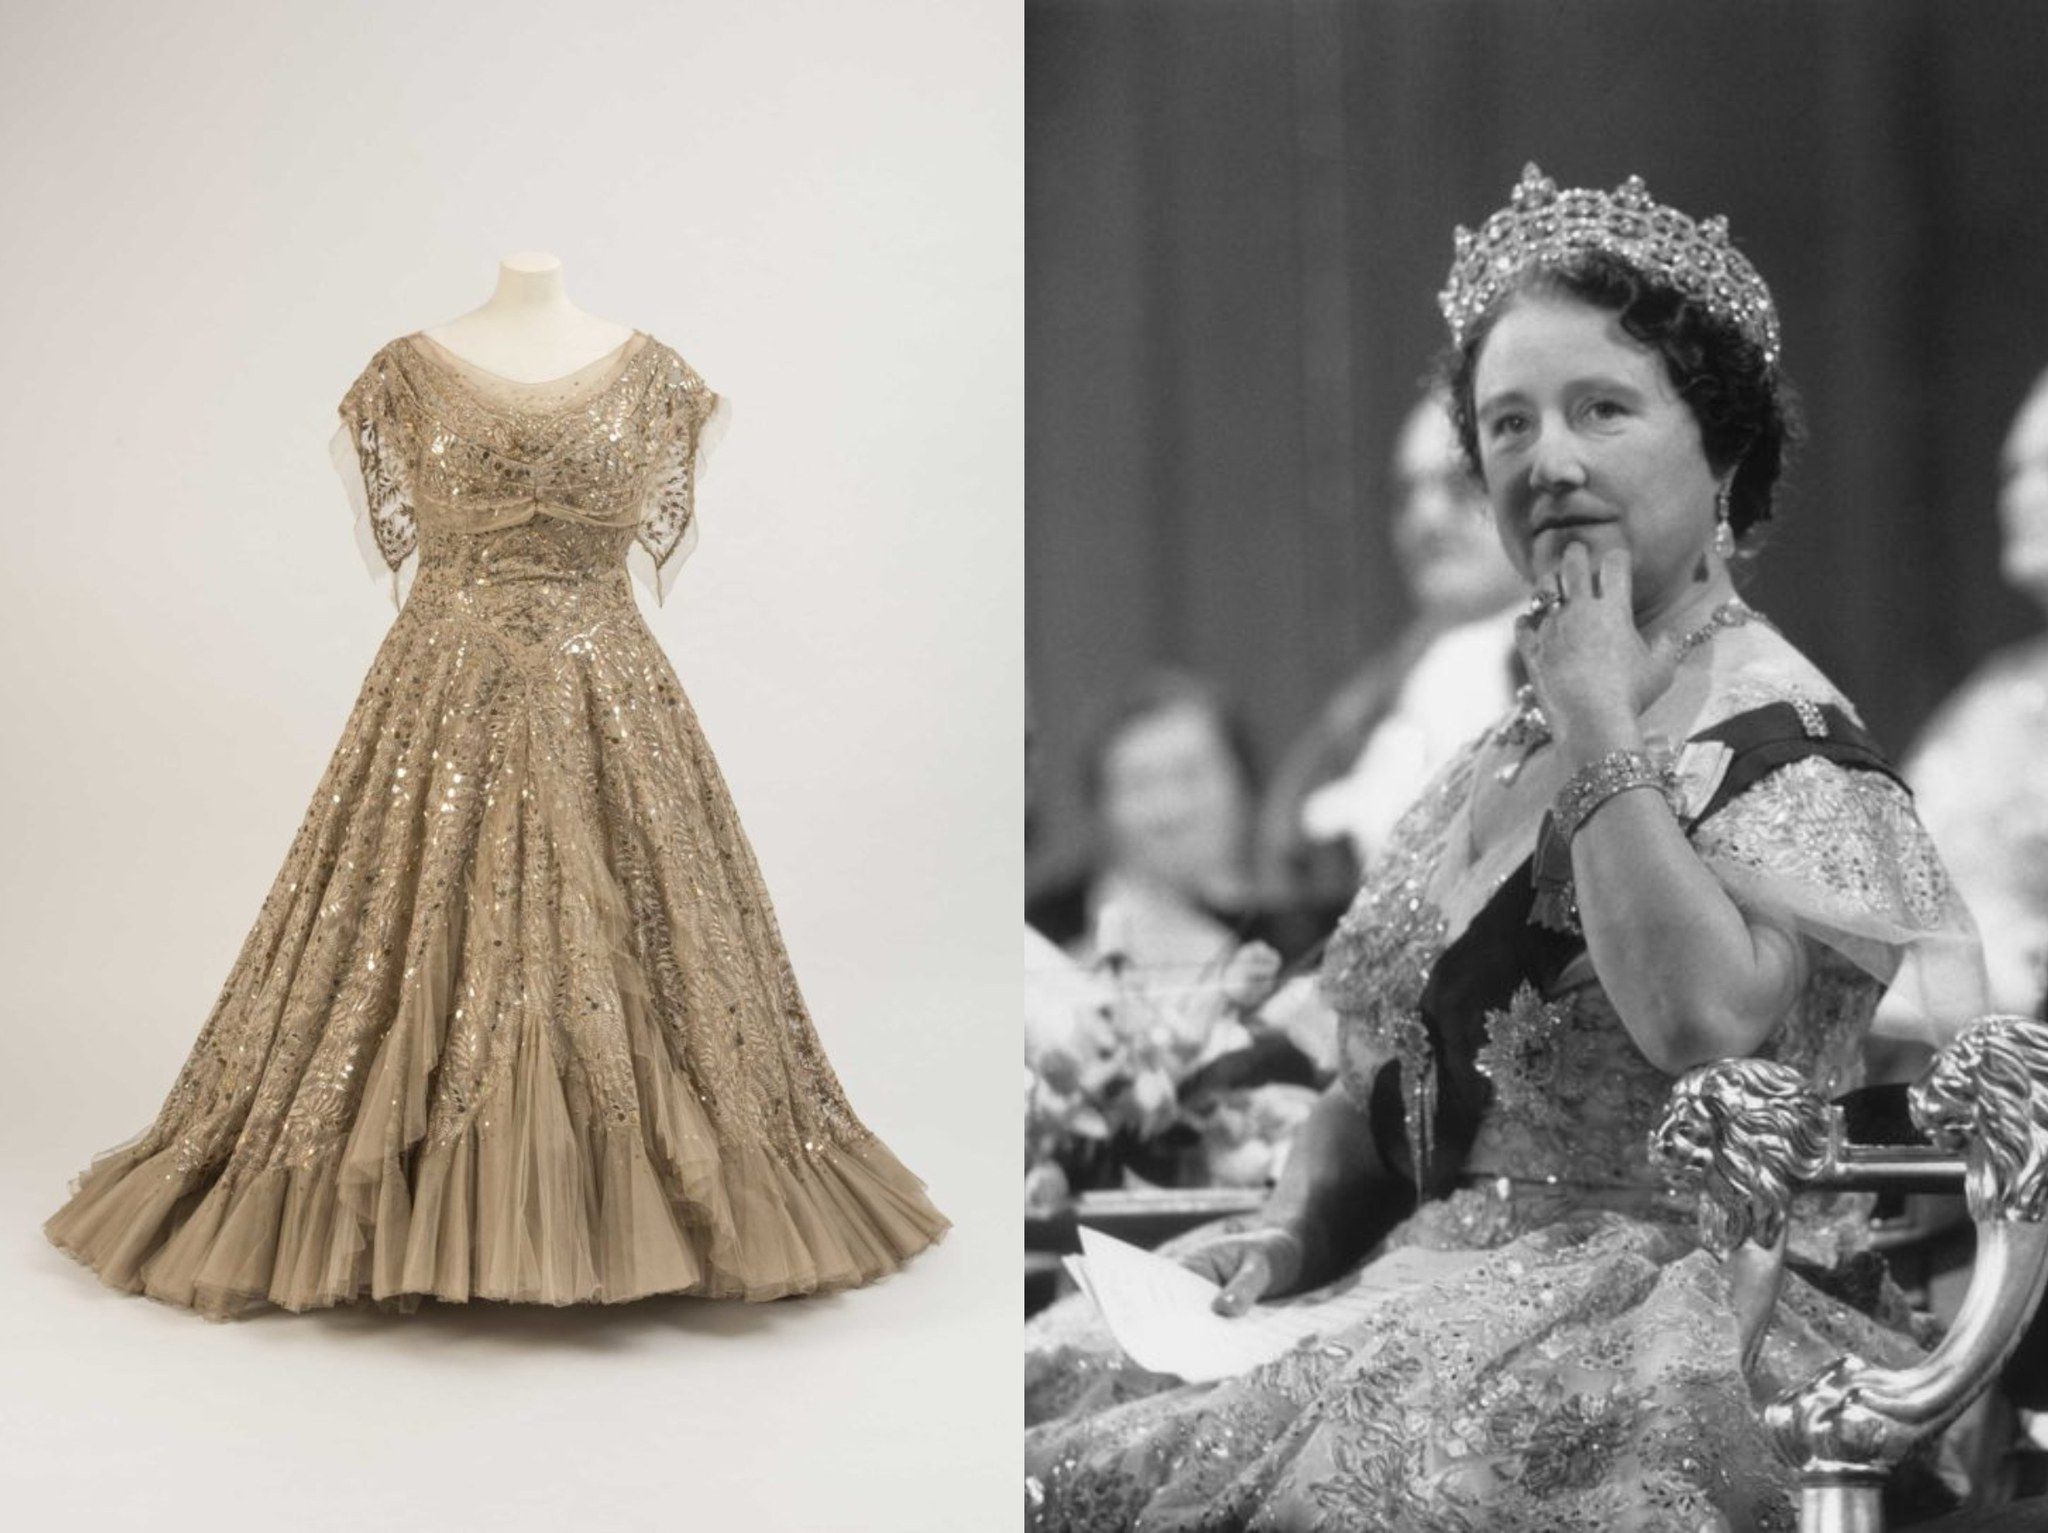   Thái hậu Elizabeth mặc váy dạ hội của Hartnell với lớp vải ren và hạt sequin vàng lấp lánh, ...